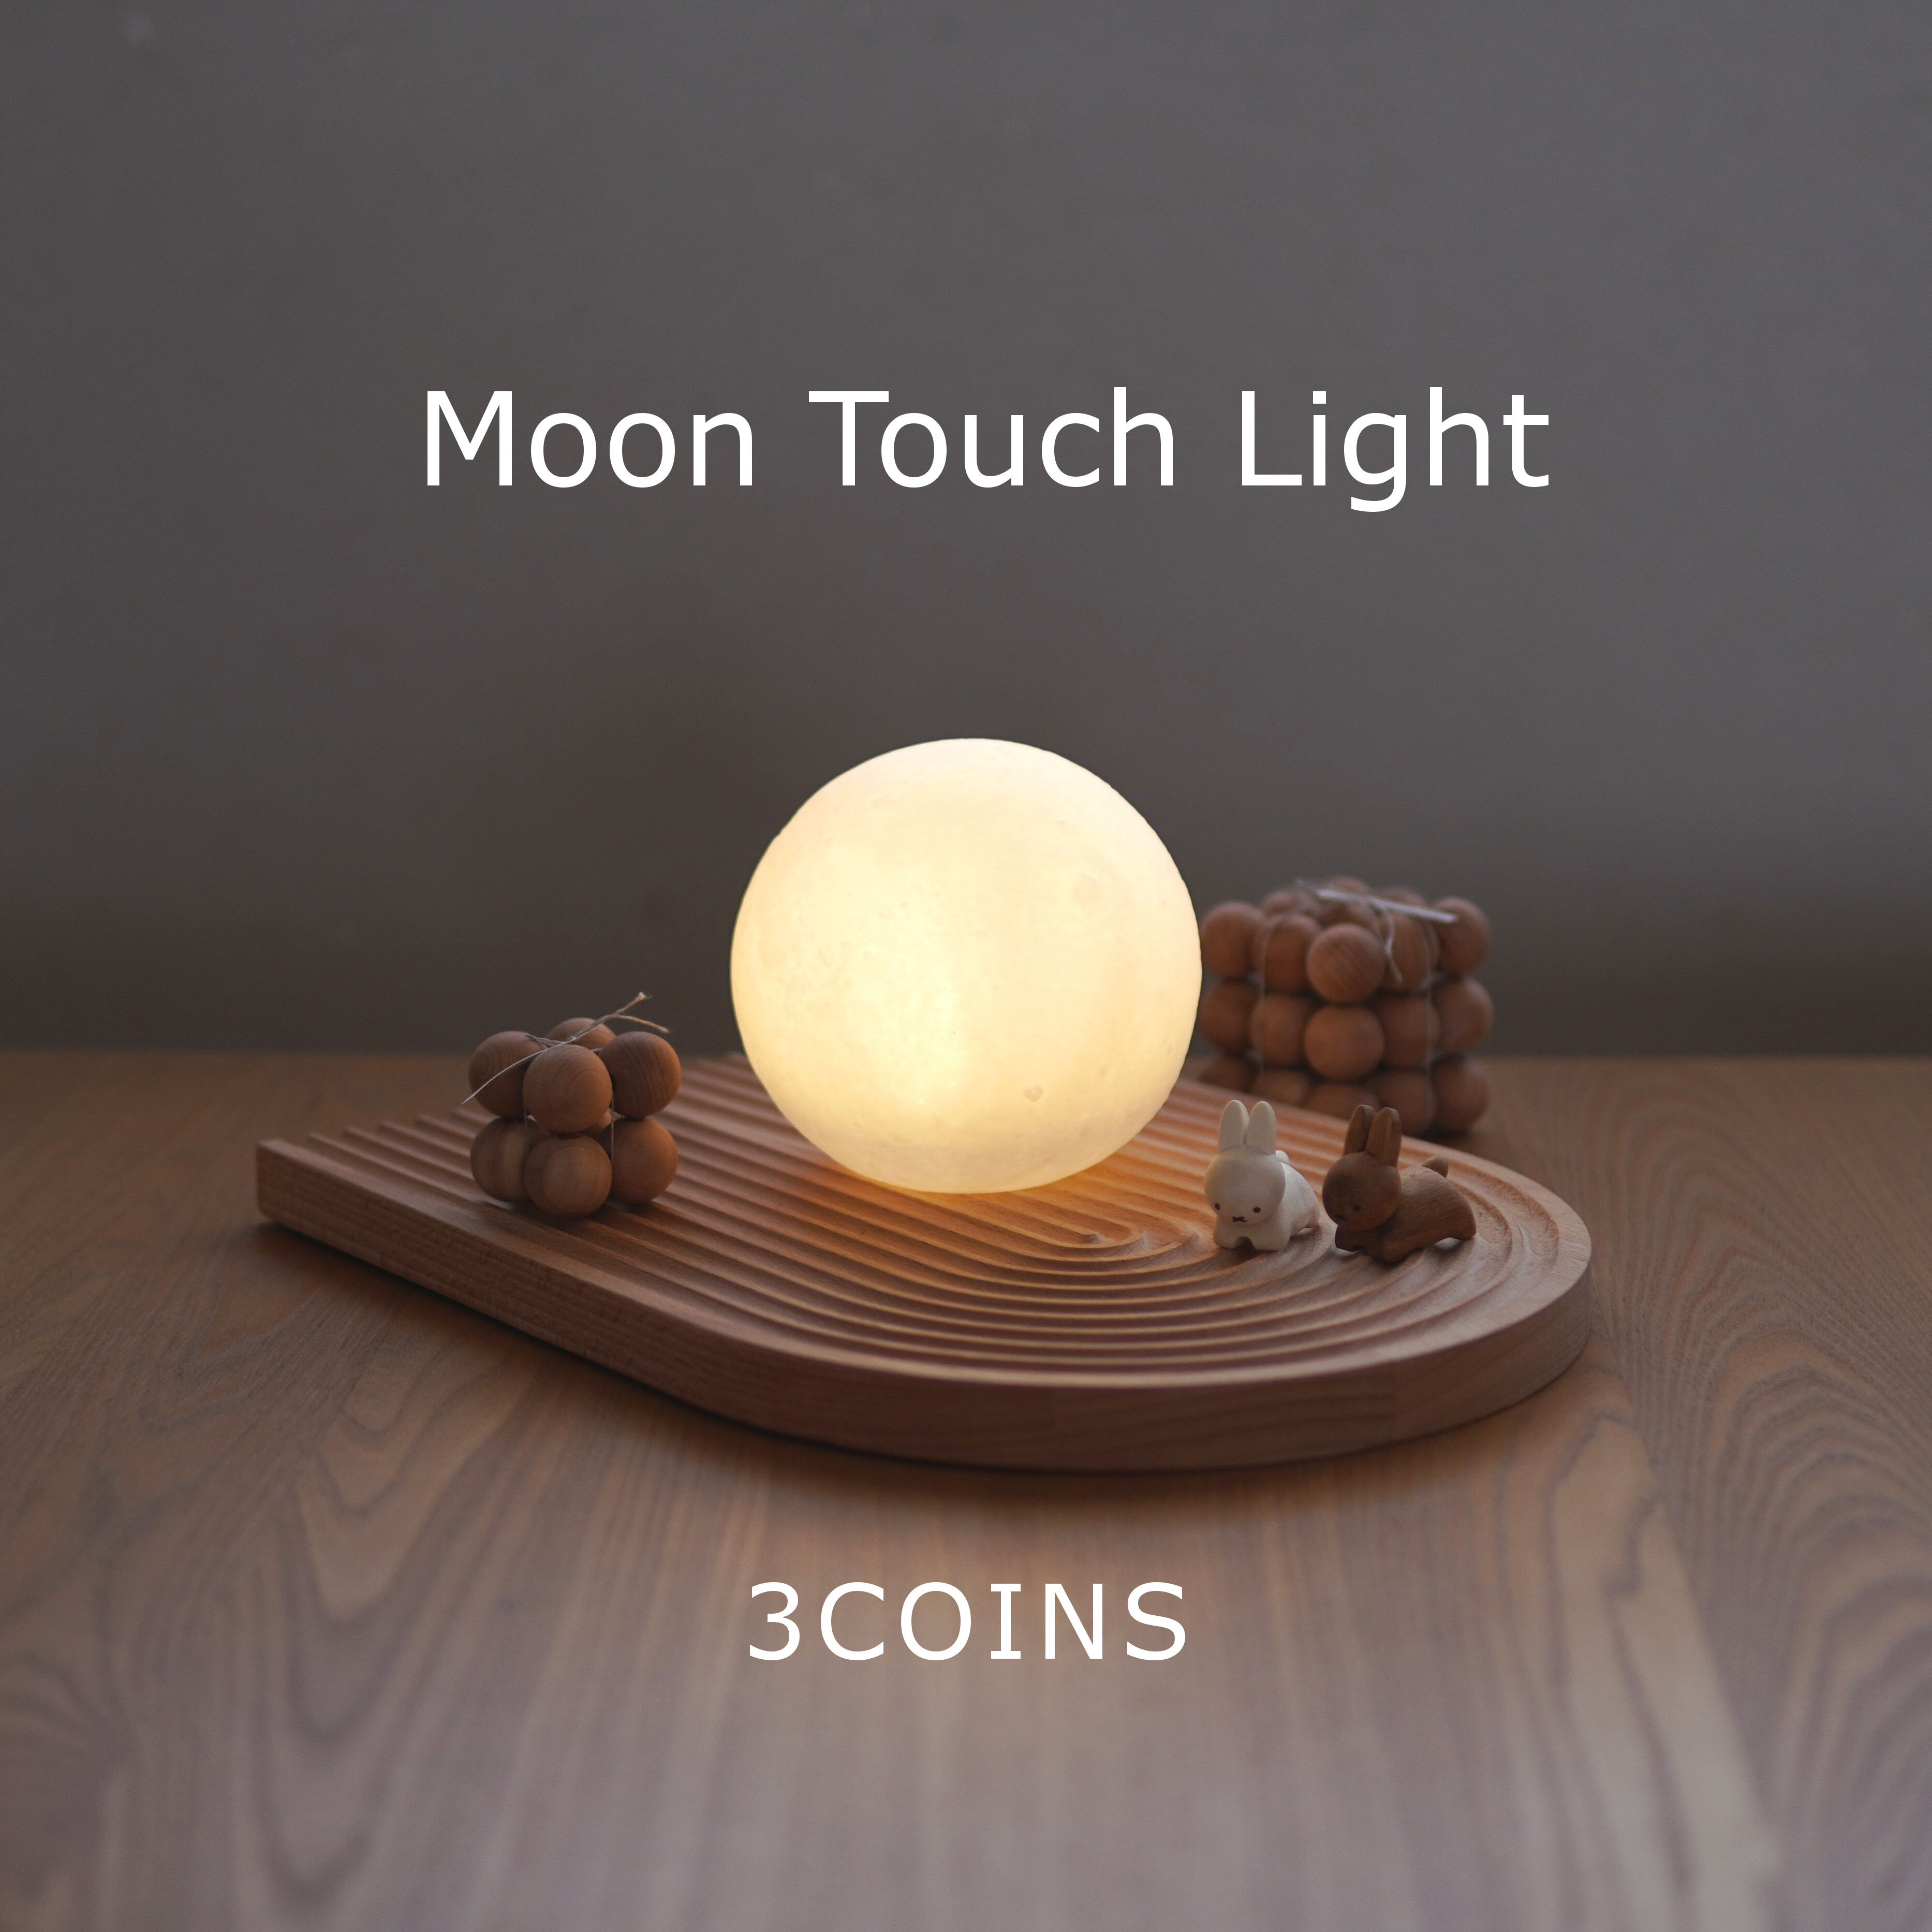 爆発的大ヒット【3COINS】ムーンタッチライトは月のように美しい！コスパ抜群で間接照明としても優秀 : usagi works Powered by  ライブドアブログ